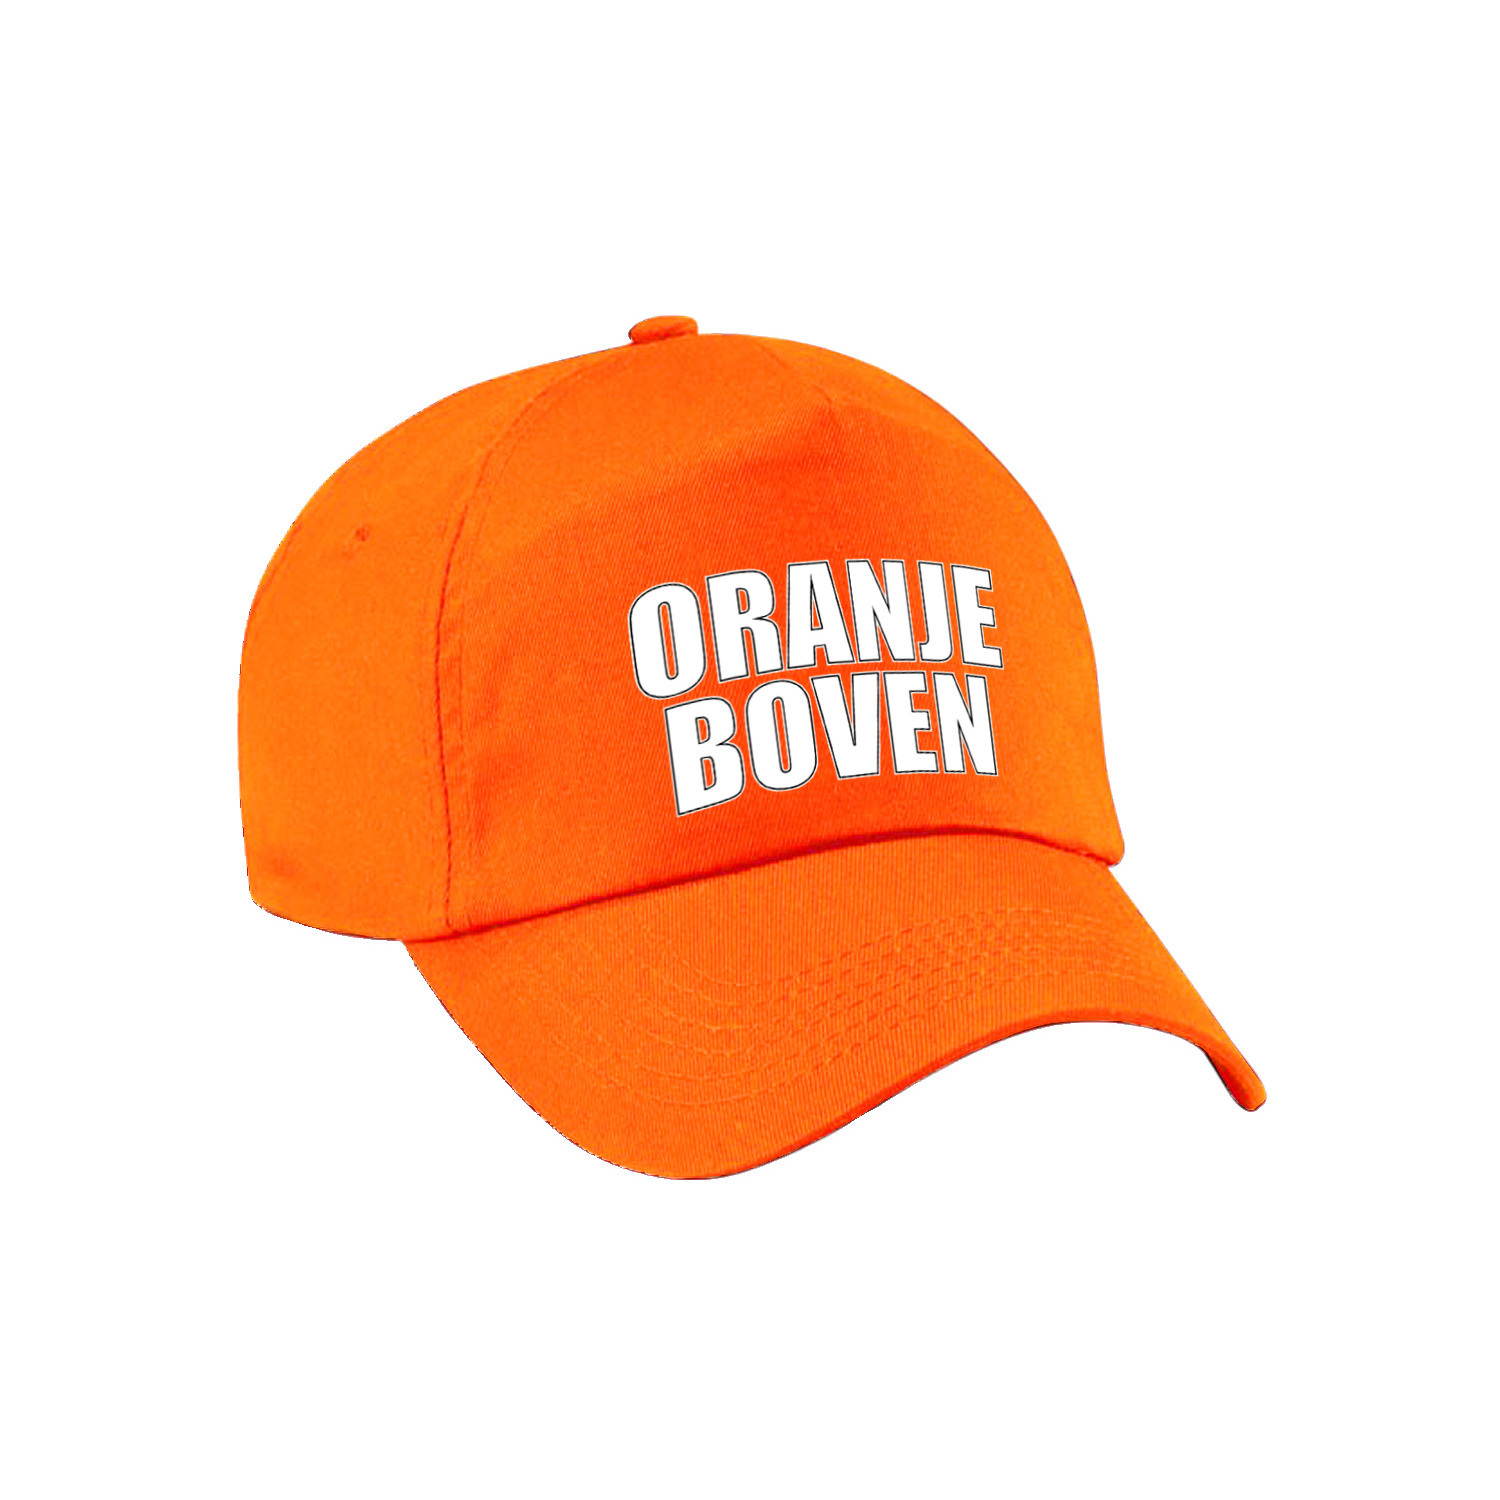 Oranje boven supporter pet - cap Holland - Nederland fan - EK - WK voor volwassenen